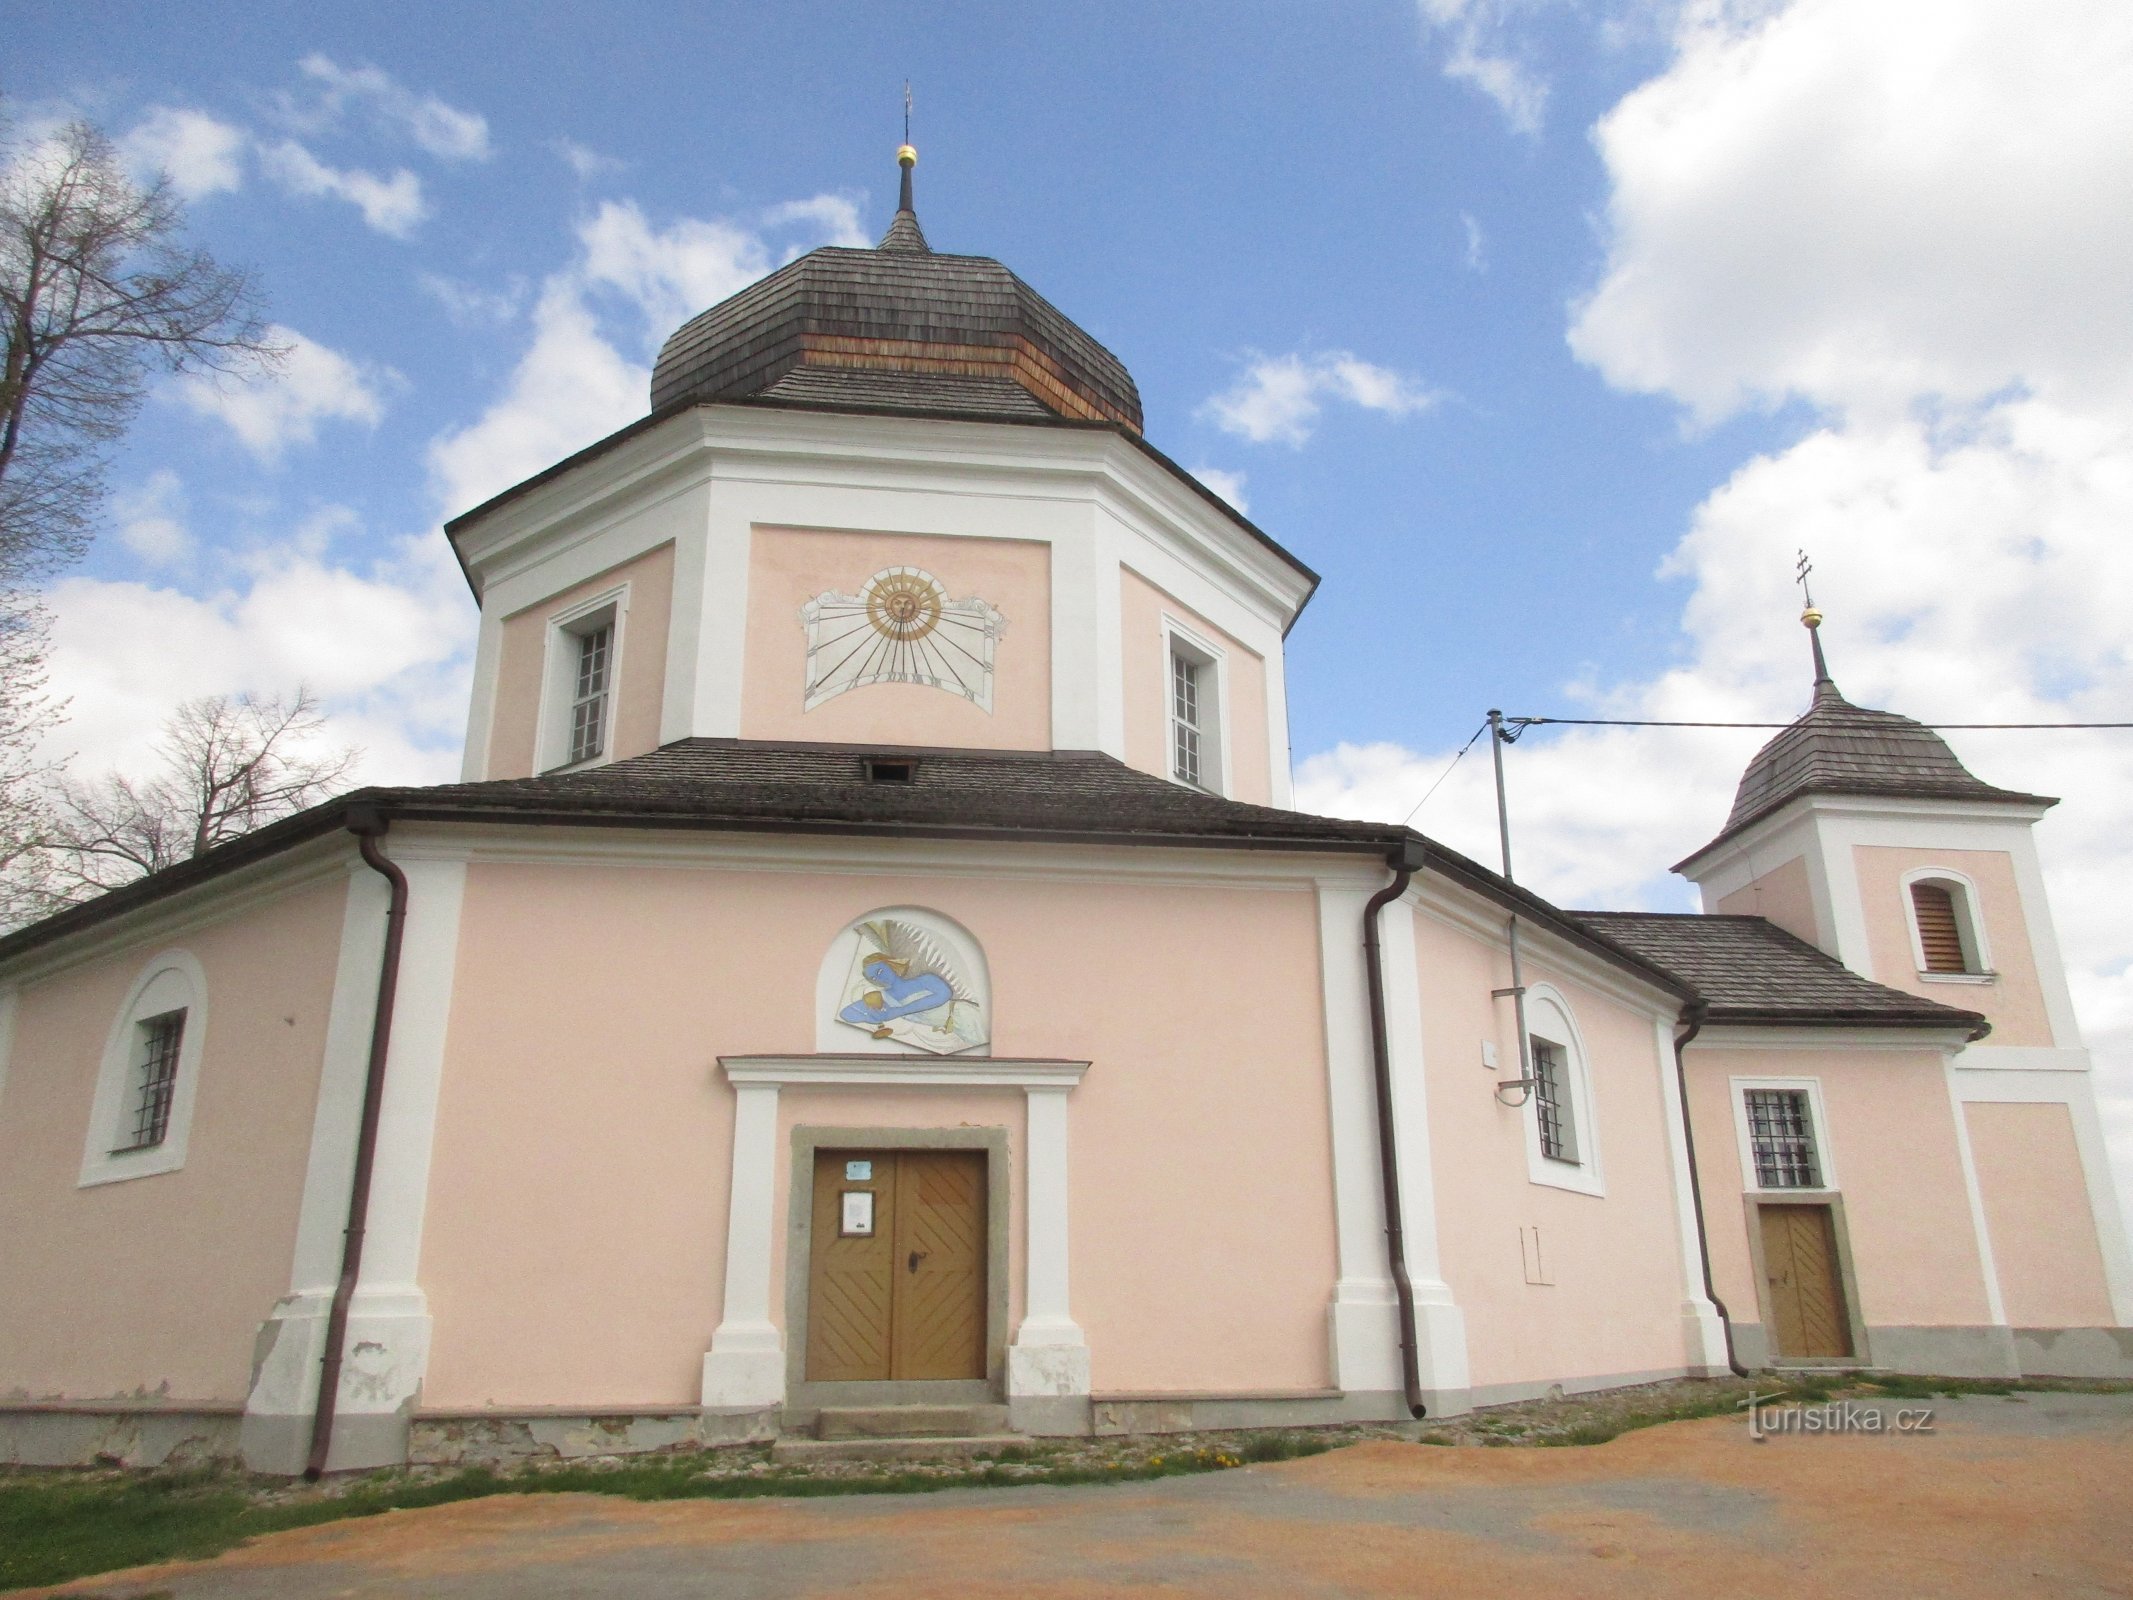 St. Barbara's Church in Pročevile